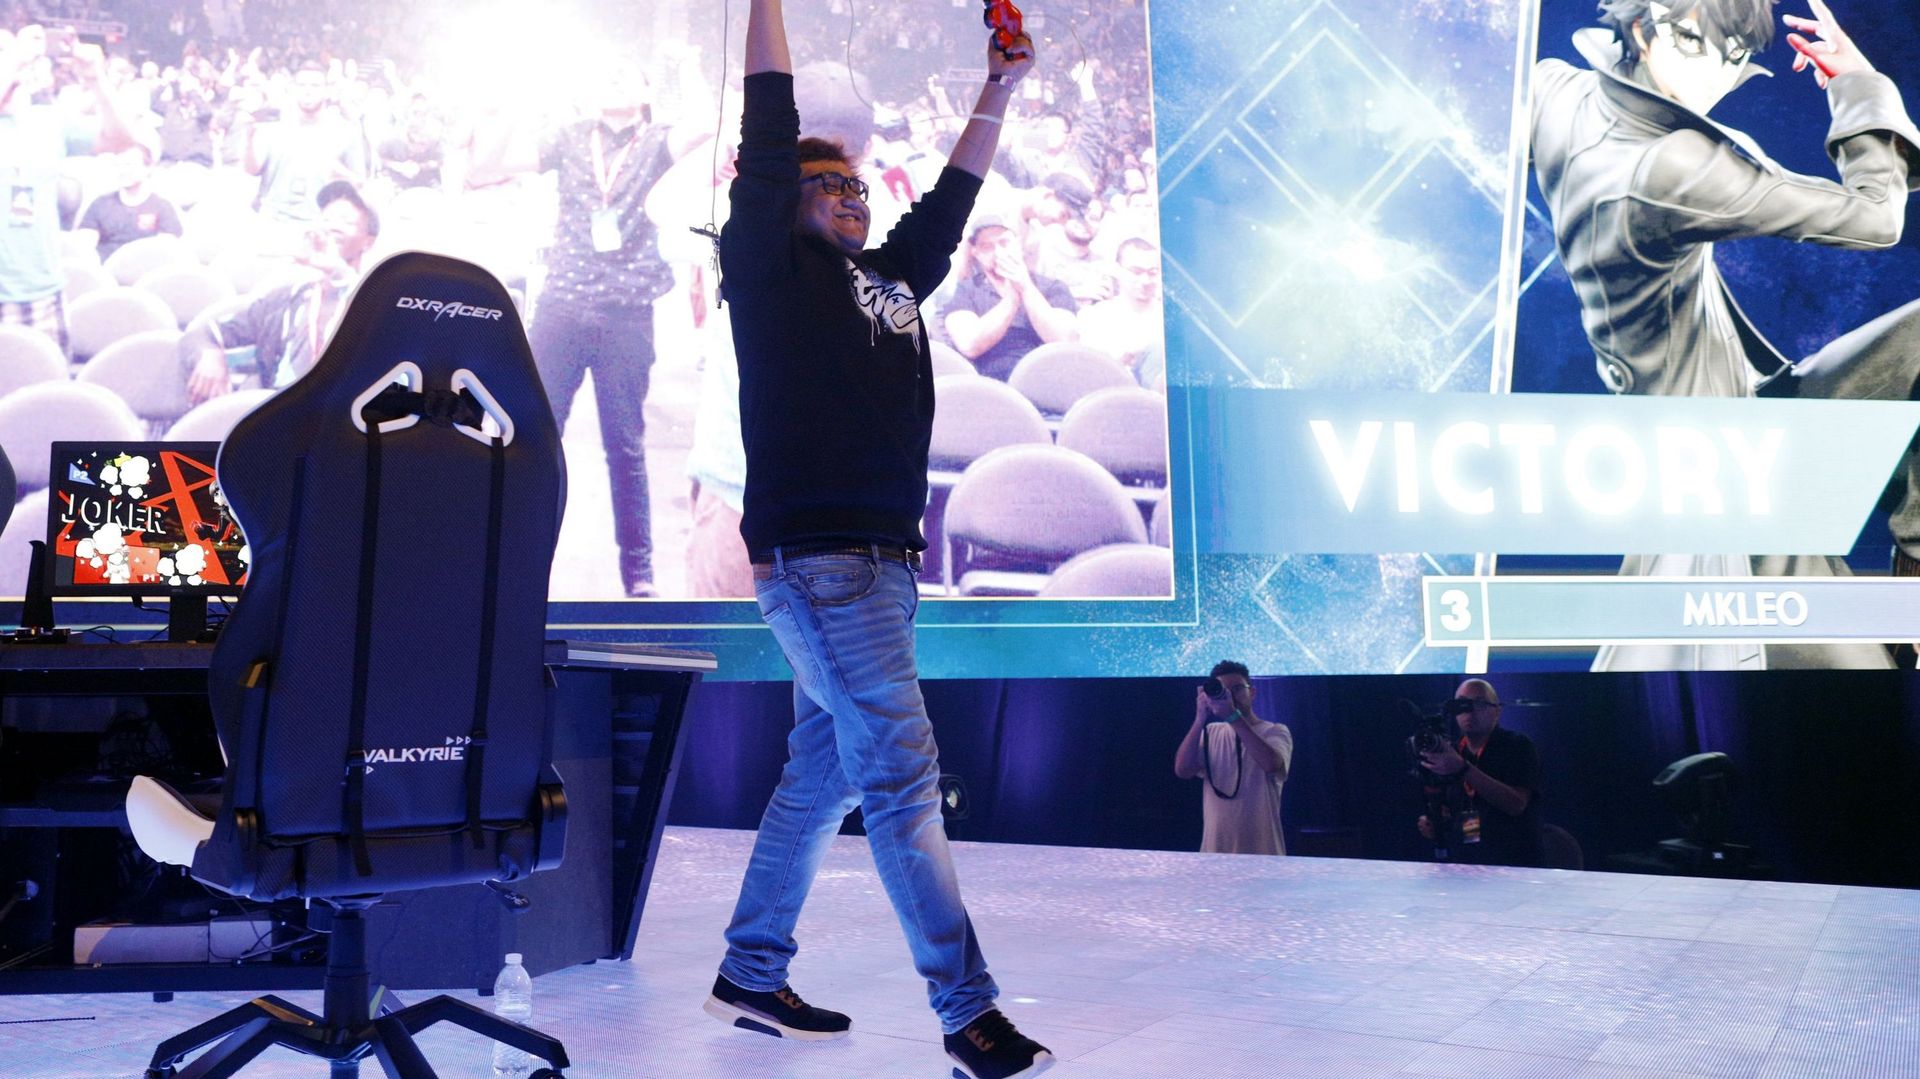 MKLeo, vainqueur du grand tournoi Super Smash Bros. lors de l’EVO 2019 à Las Vegas |